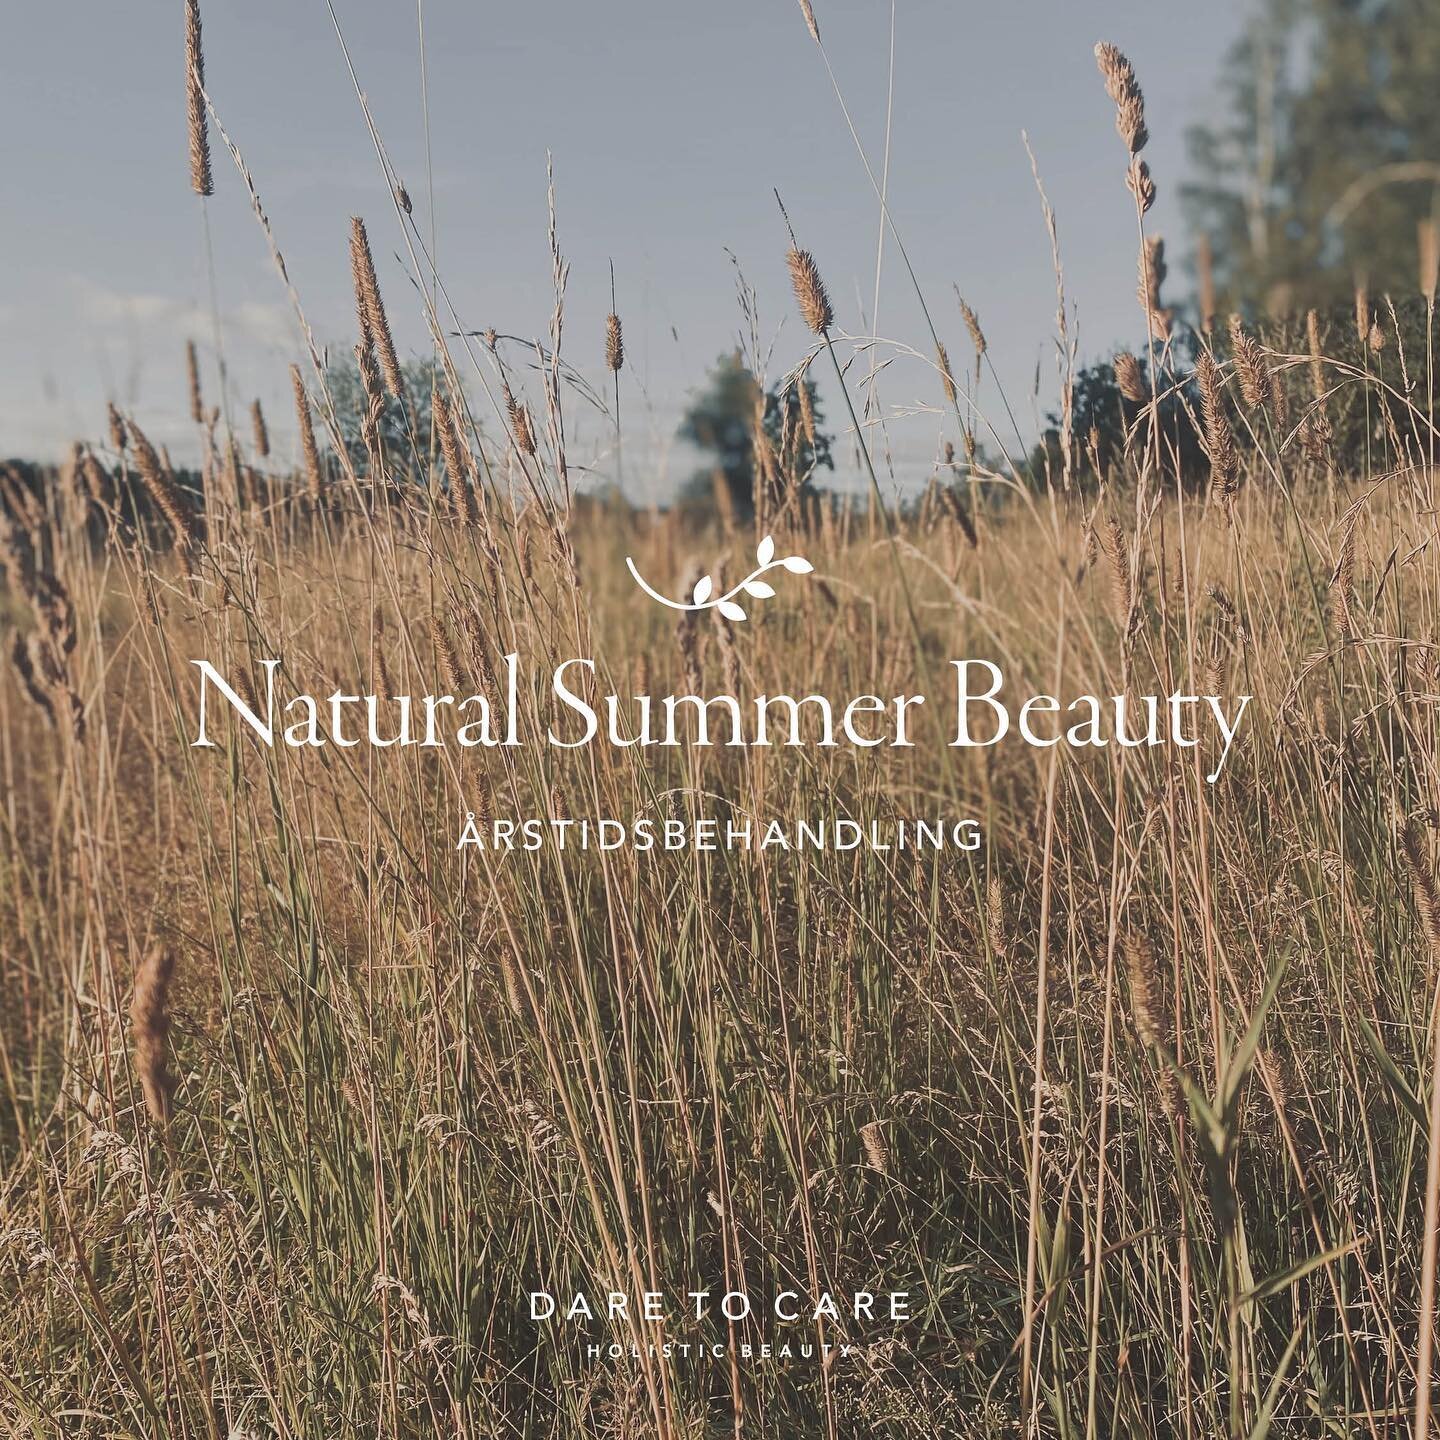 Du kan nu booke tid til vores nye årstidsbehandling; Natural Summer Beauty ☀️🐚
 
Sommeren er på mange måder en velsignelse for os og vores hud - mere lys, mere energi, mere glød og vitalitet. 
 